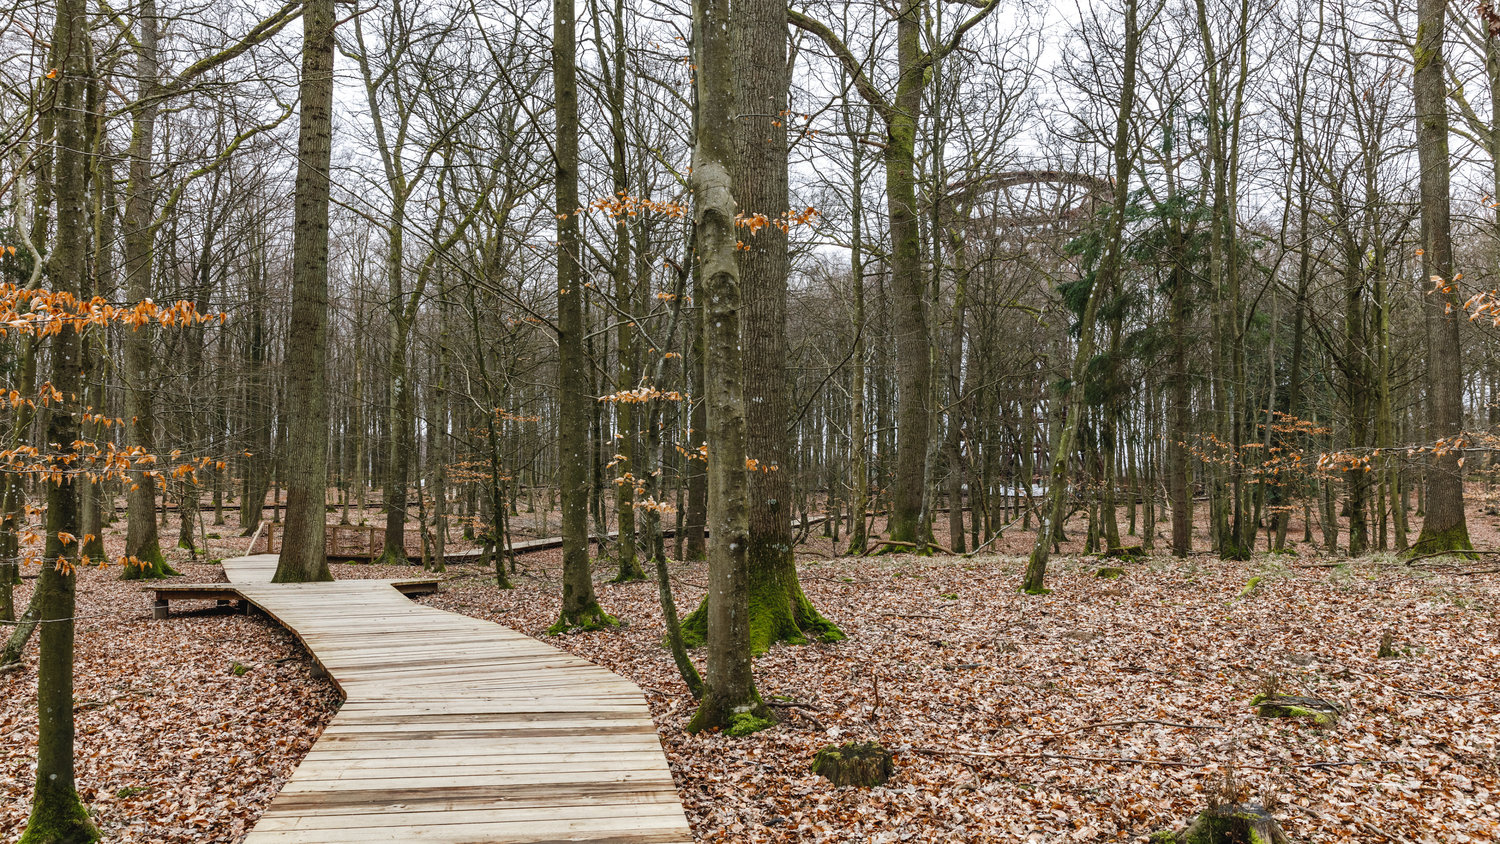 Het wandelpad ligt in het beschermde woud rondom het klooster van Gisselfeld. Om het ongerepte natuurgebied zo min mogelijk te verstoren, hebben de makers, het Deense architectenbureau EFFEKT, een wandelpad ontworpen dat net boven de bosgrond zweeft.